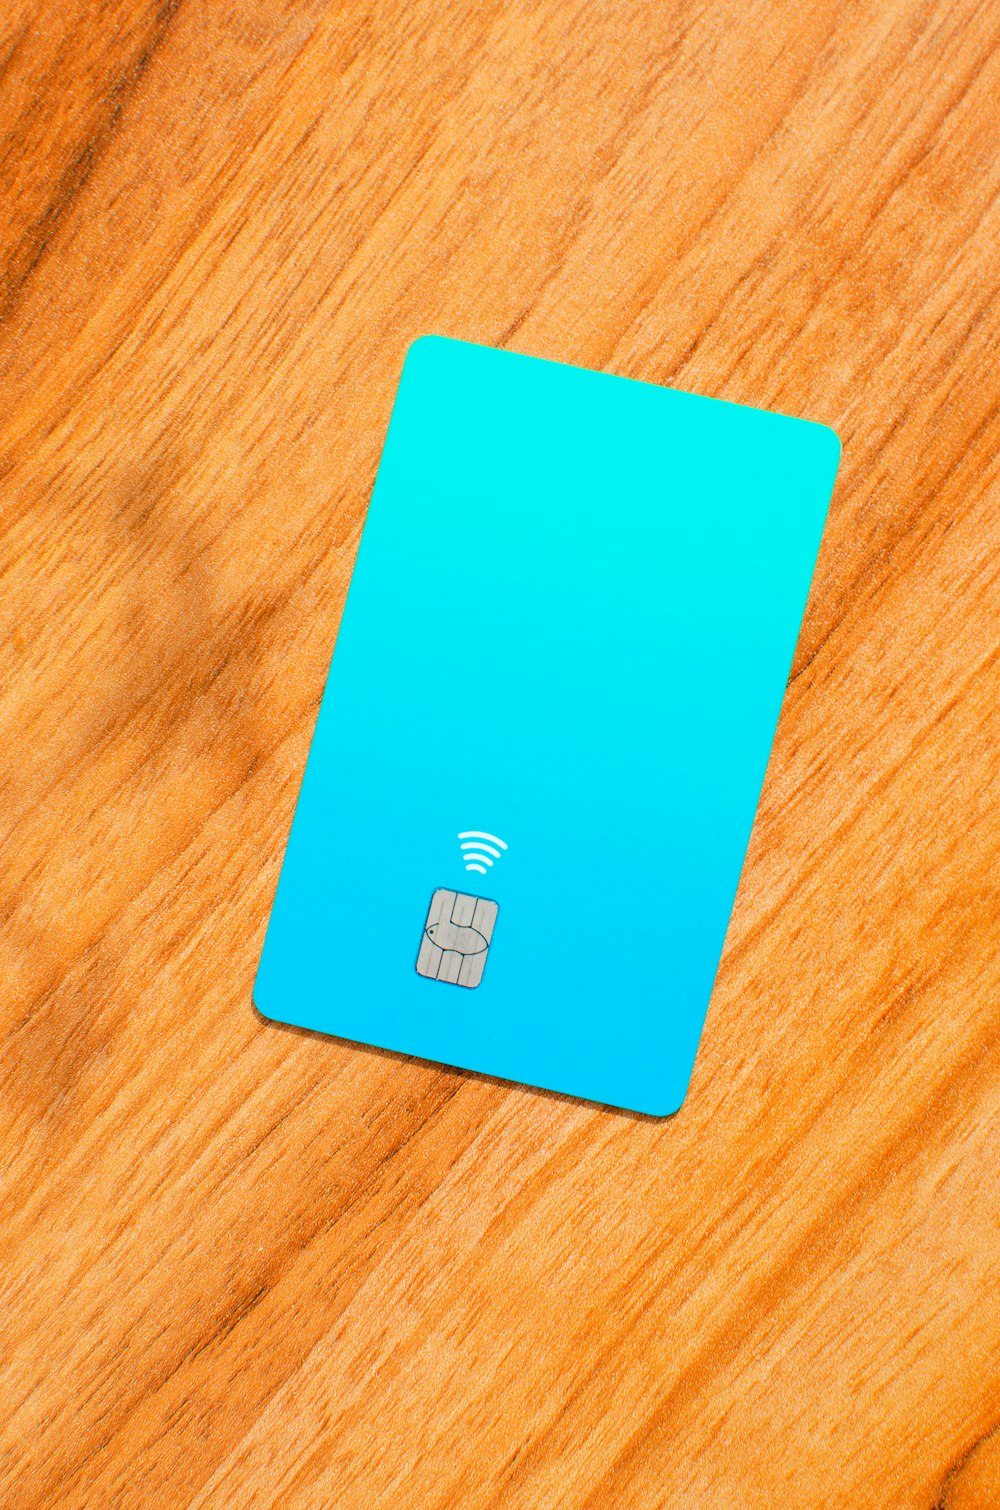 Um cartão SIM azul sentado em cima de uma mesa de madeira